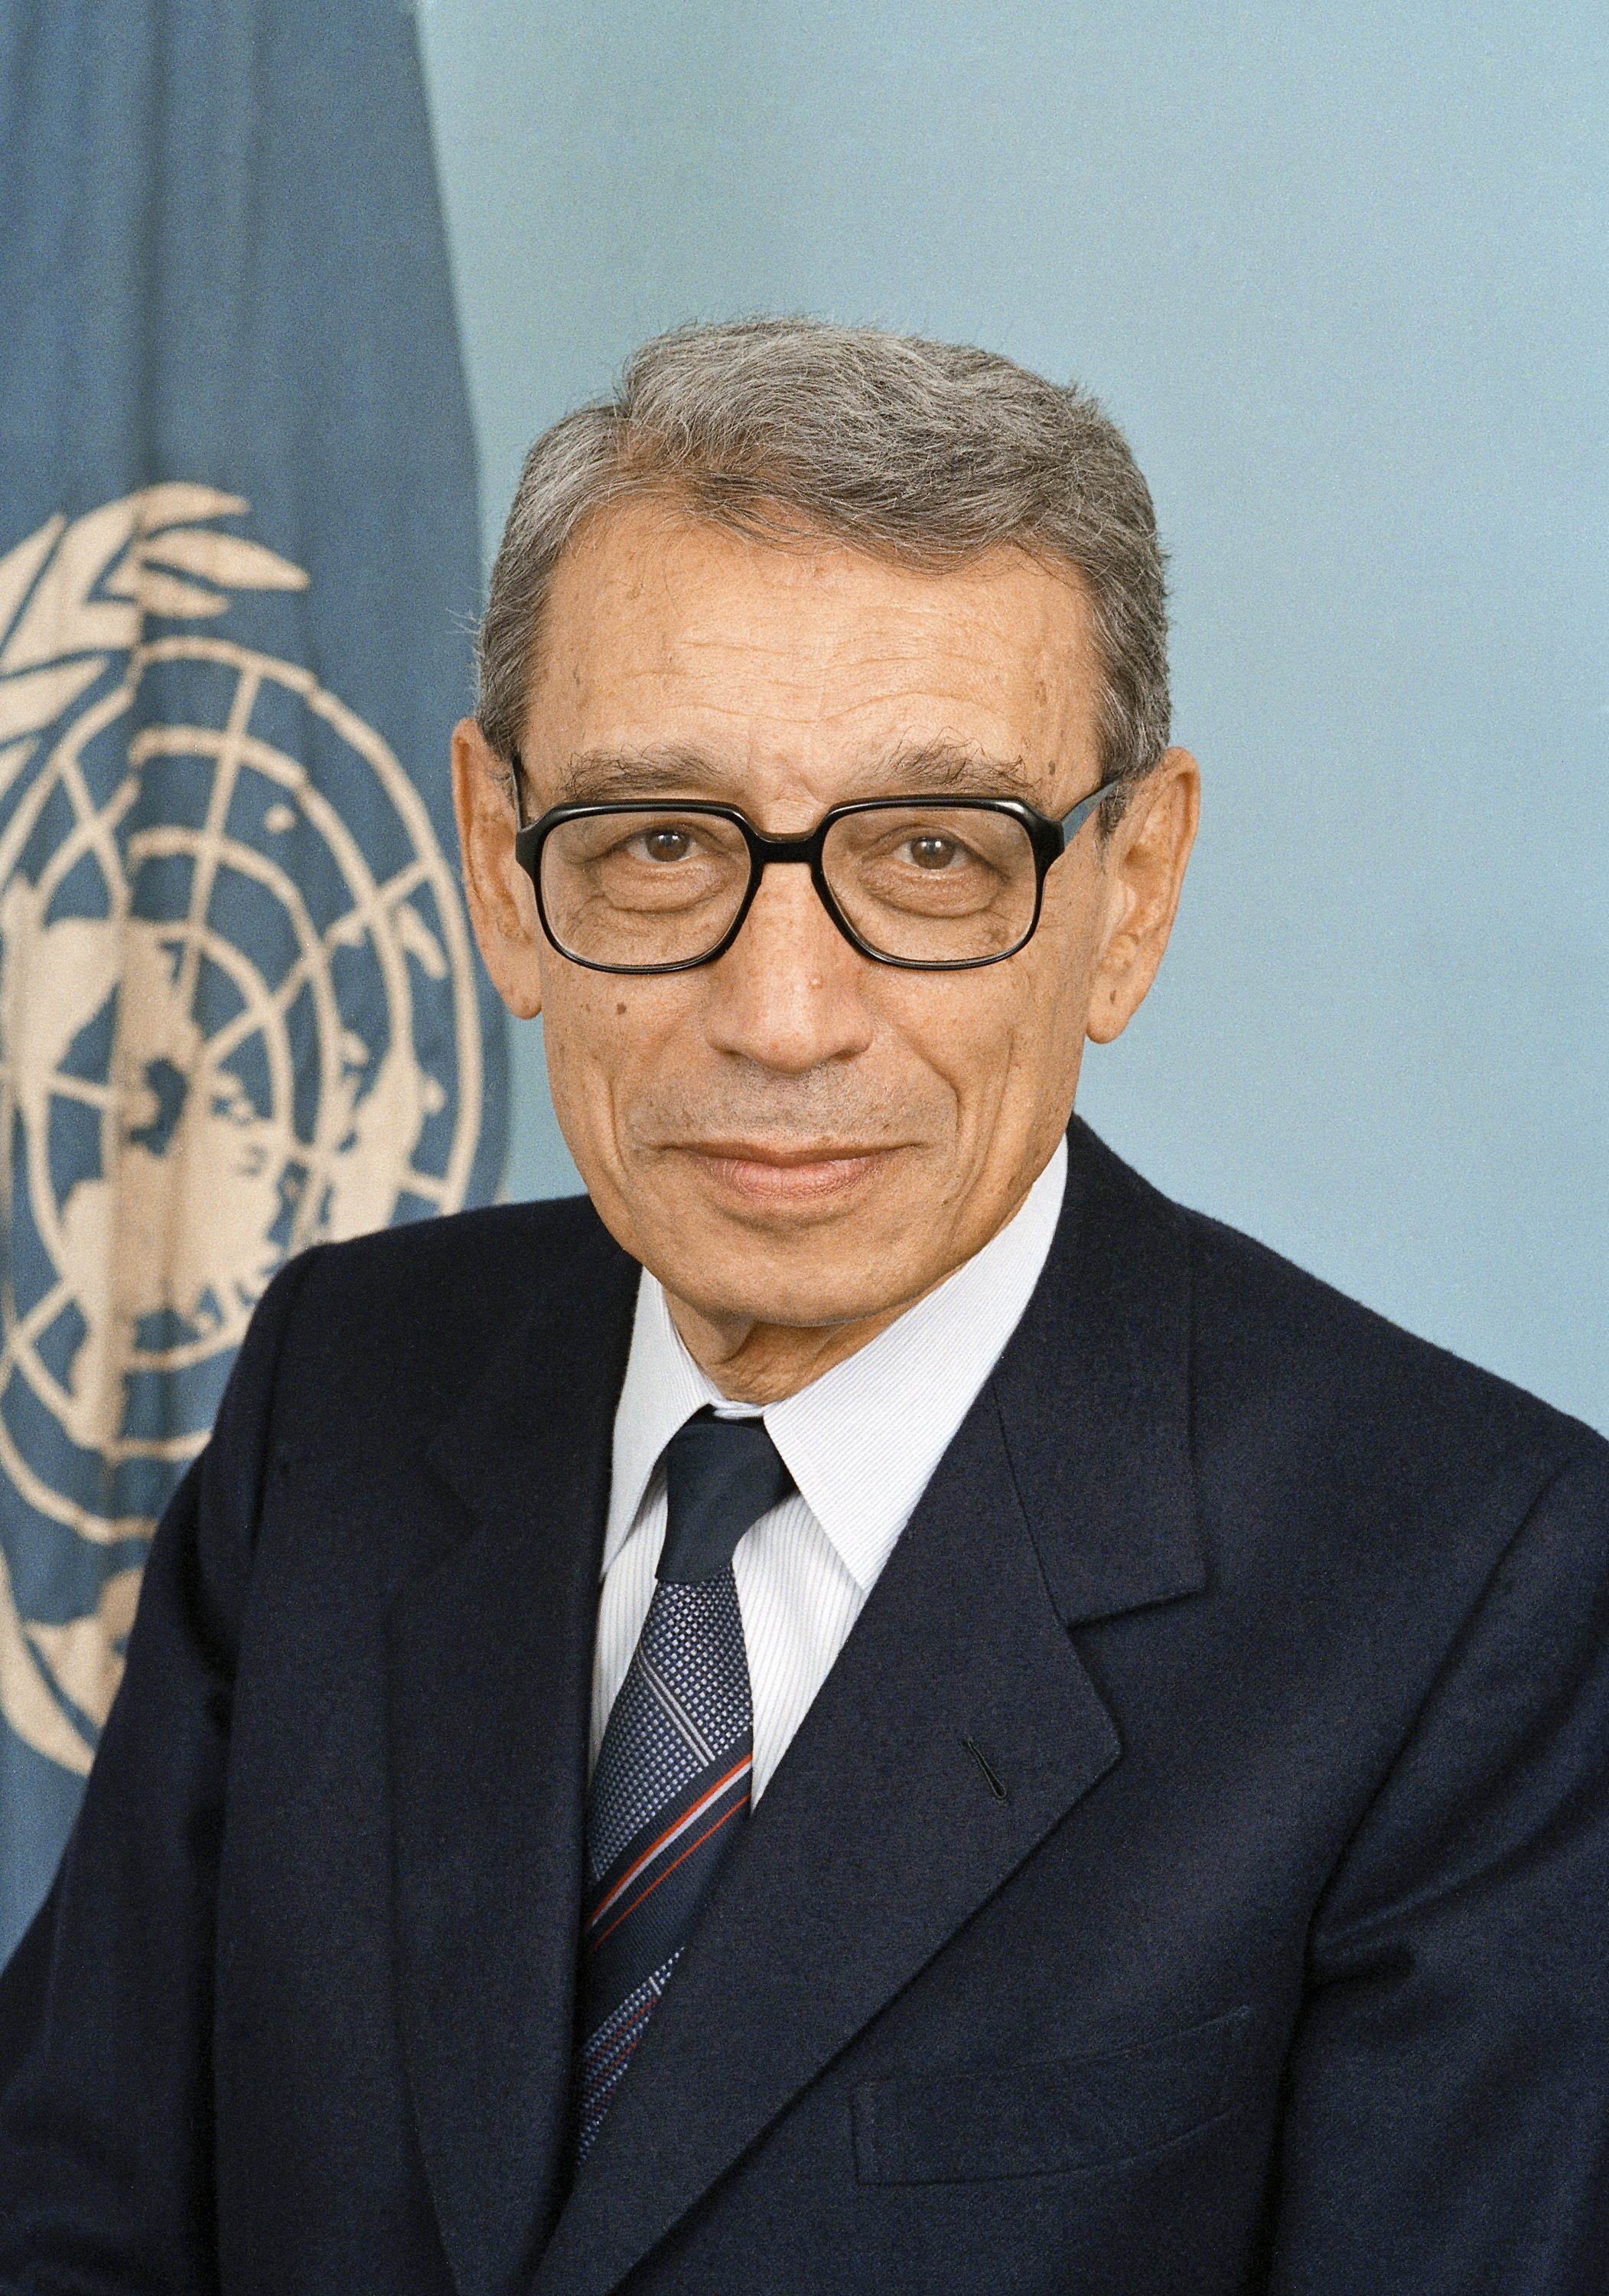 Бутрос Бутрос-Гали - Генерален секретар на ООН от 1 януари 1992 г., до 31 декември 1996 г.